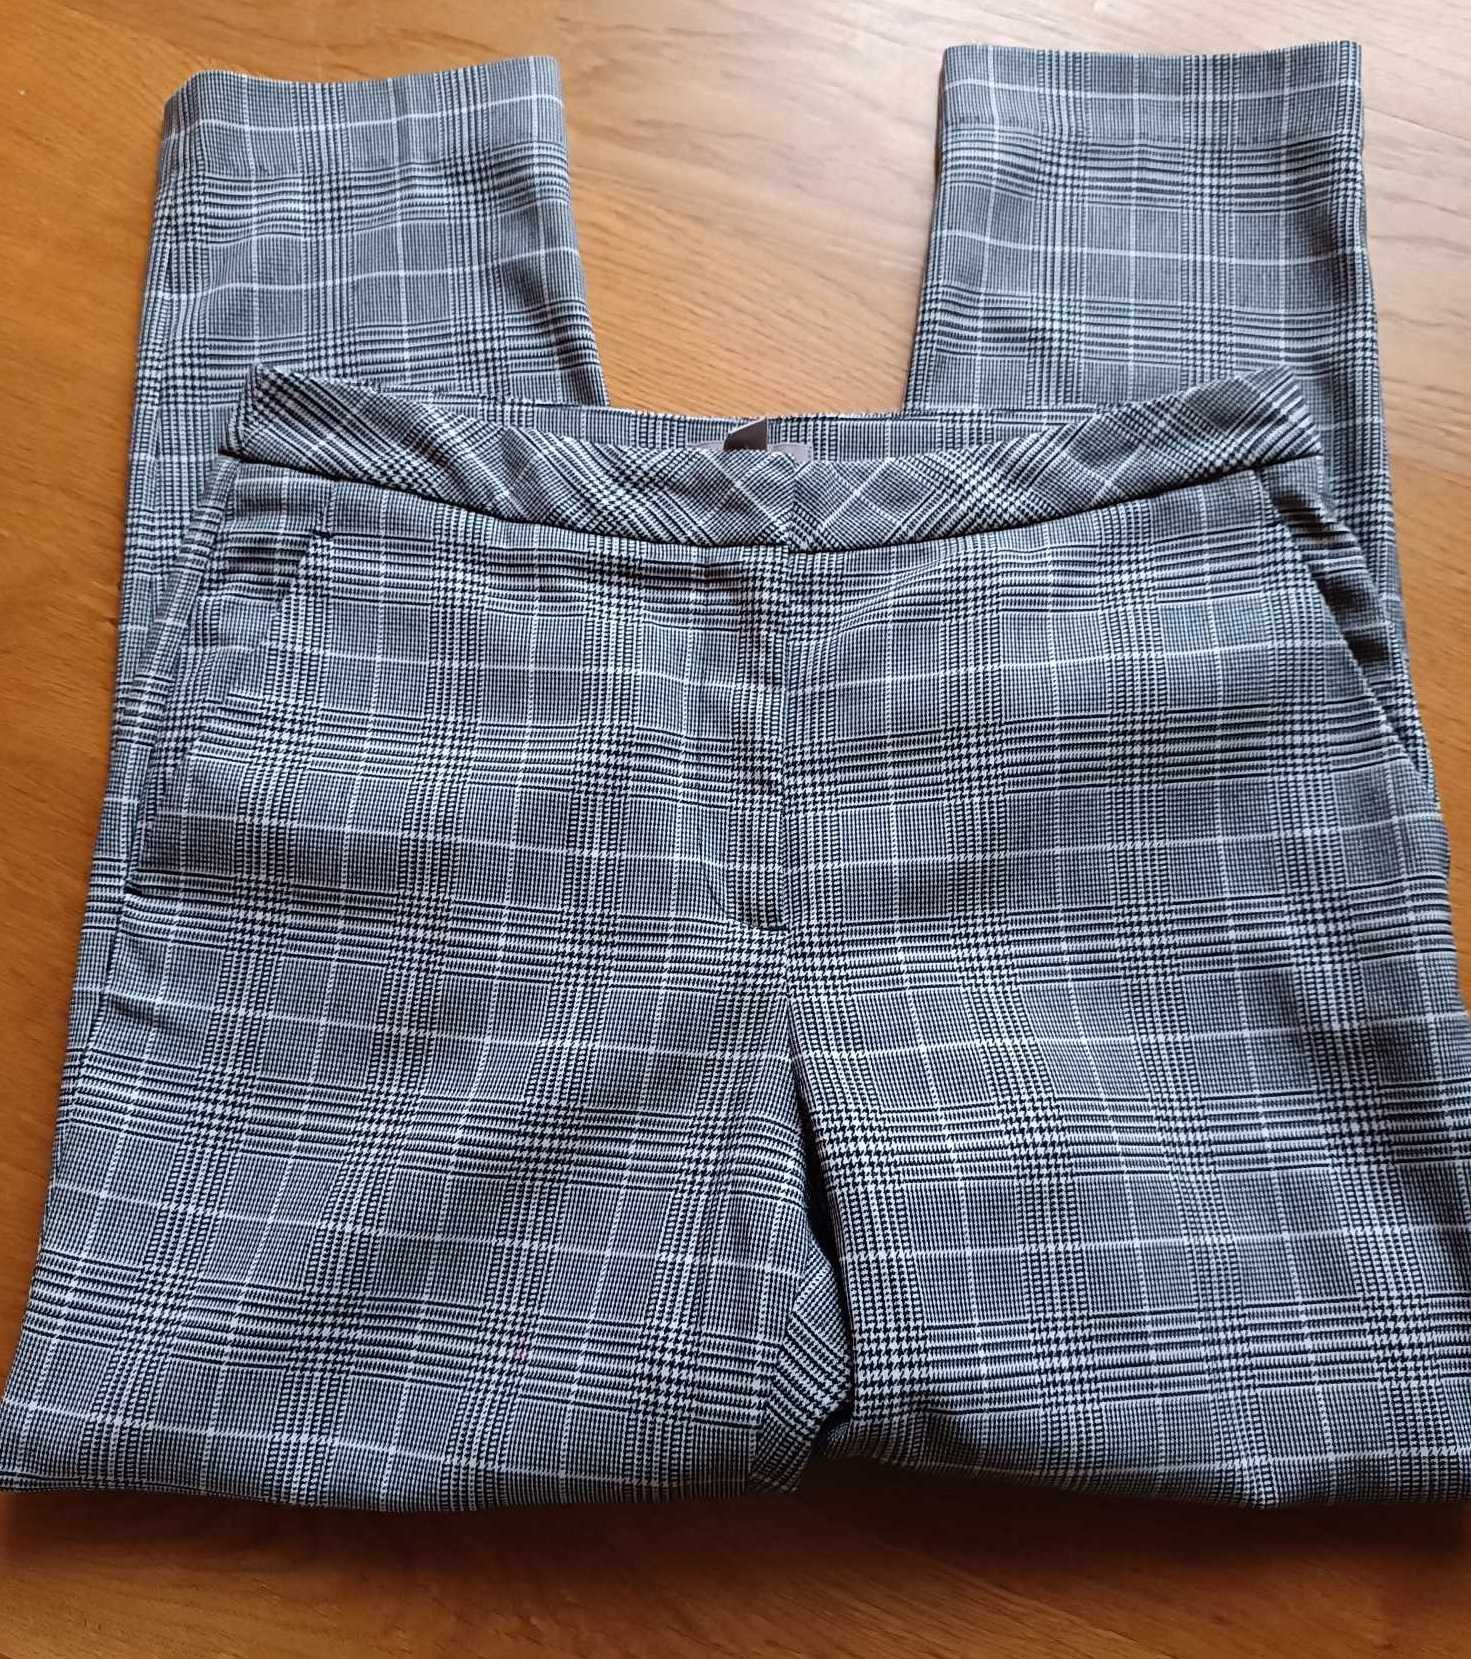 Spodnie damskie w elegancką kratkę., H&M, rozmiar 38/M